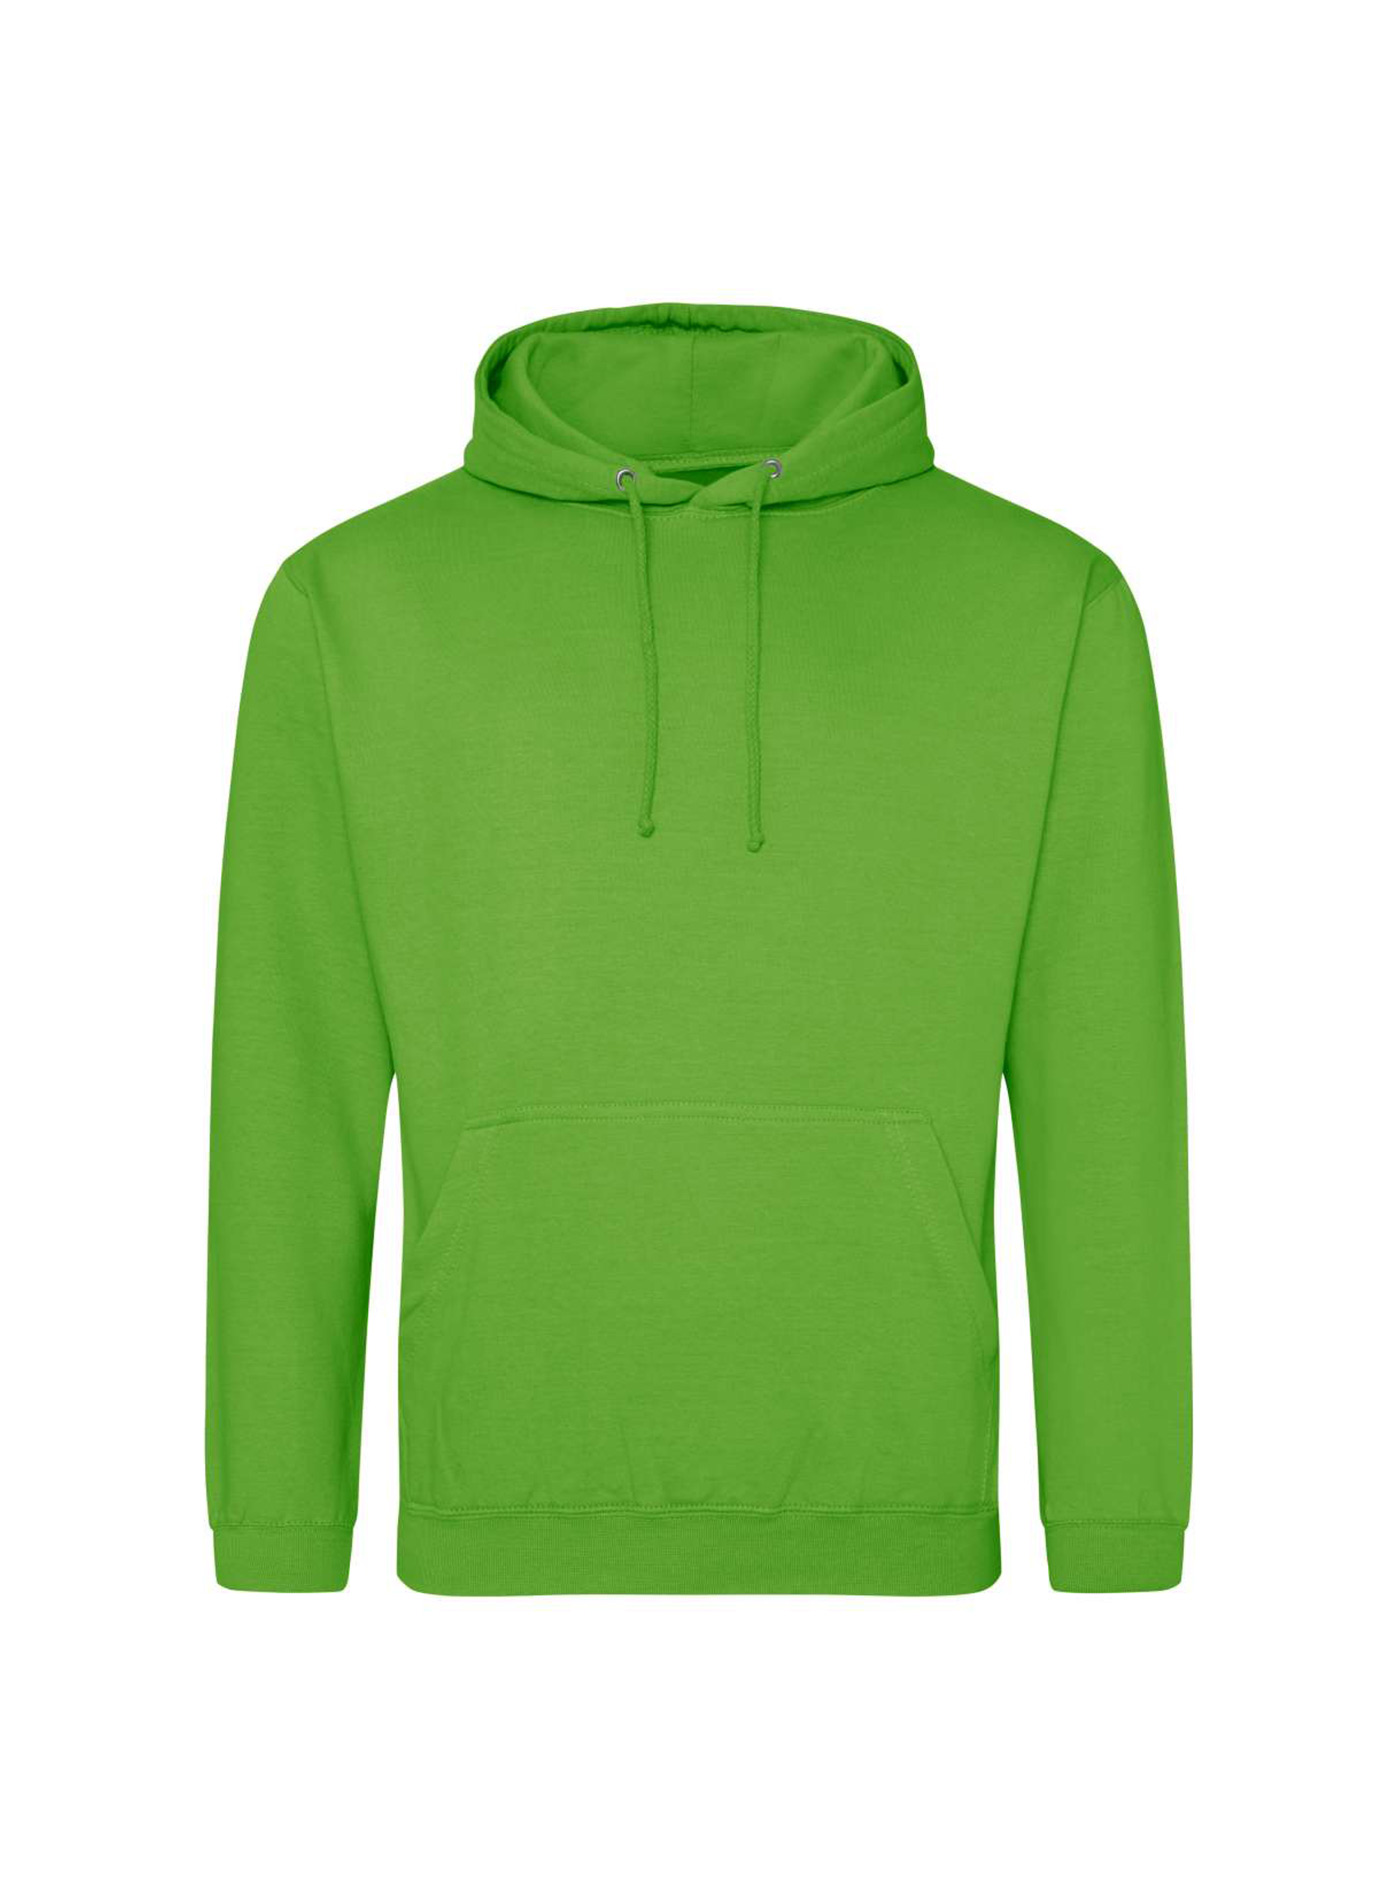 Mikina s kapucí unisex Just Hoods - Limetkově zelená S